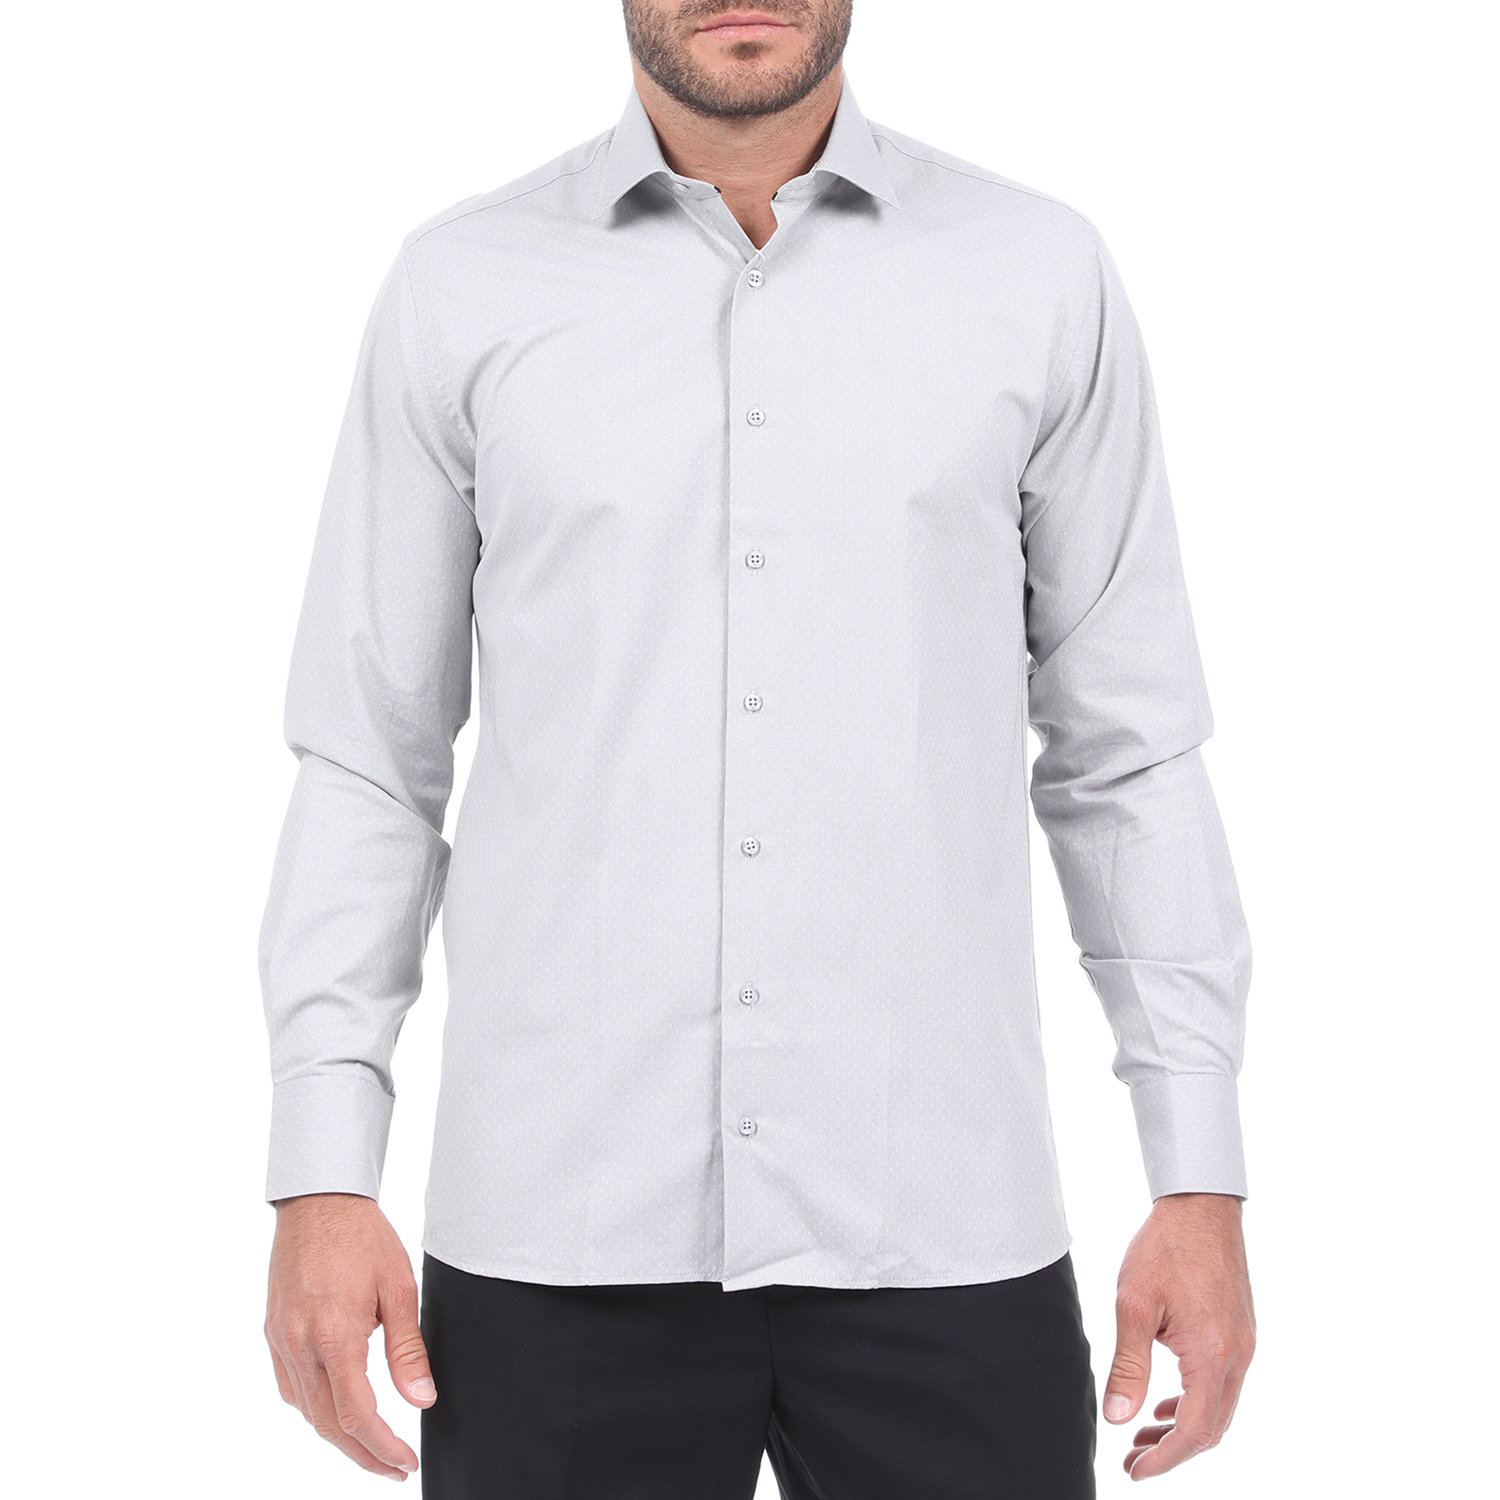 Ανδρικά/Ρούχα/Πουκάμισα/Μακρυμάνικα MARTIN & CO - Ανδρικό πουκάμισο MARTIN & CO REGULAR FIT γκρι εκρού